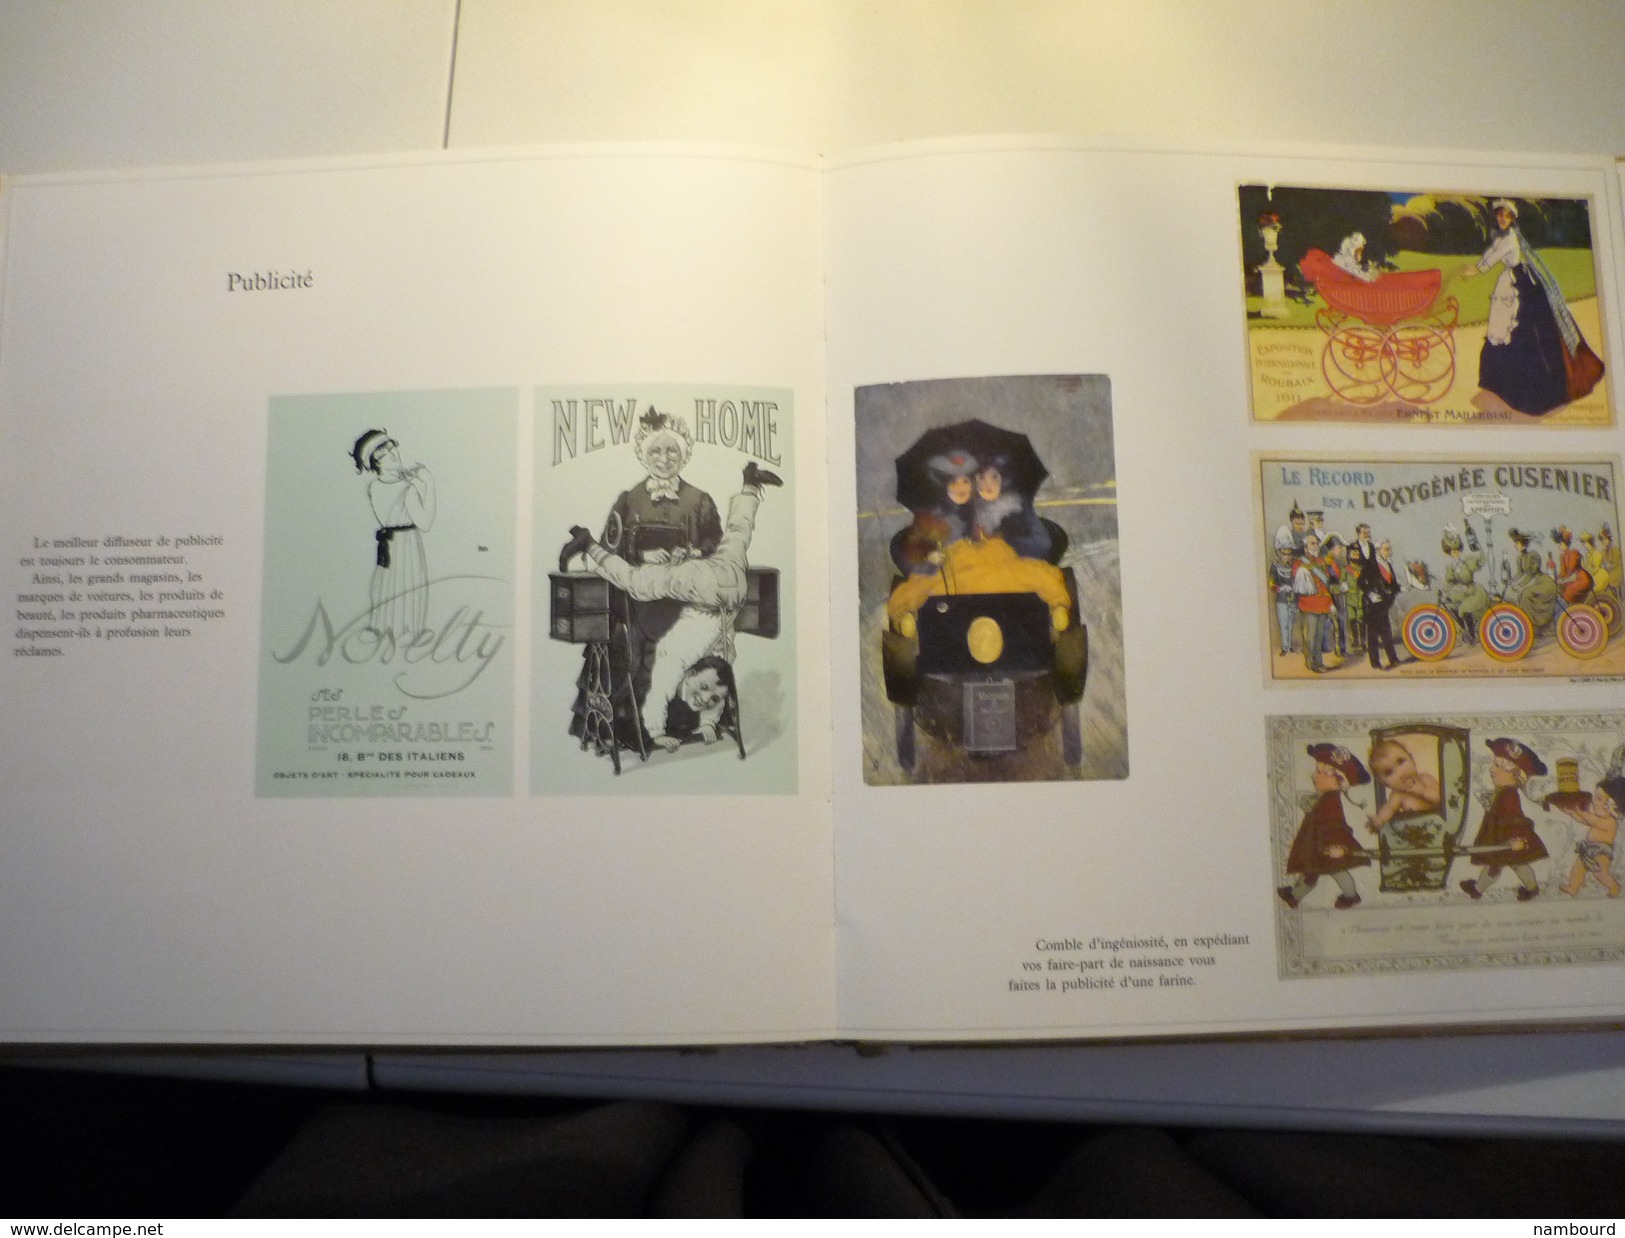 L'Age d'or de la carte postale par Ado Kyrou  André Balland et Le Terrain Vague 1966